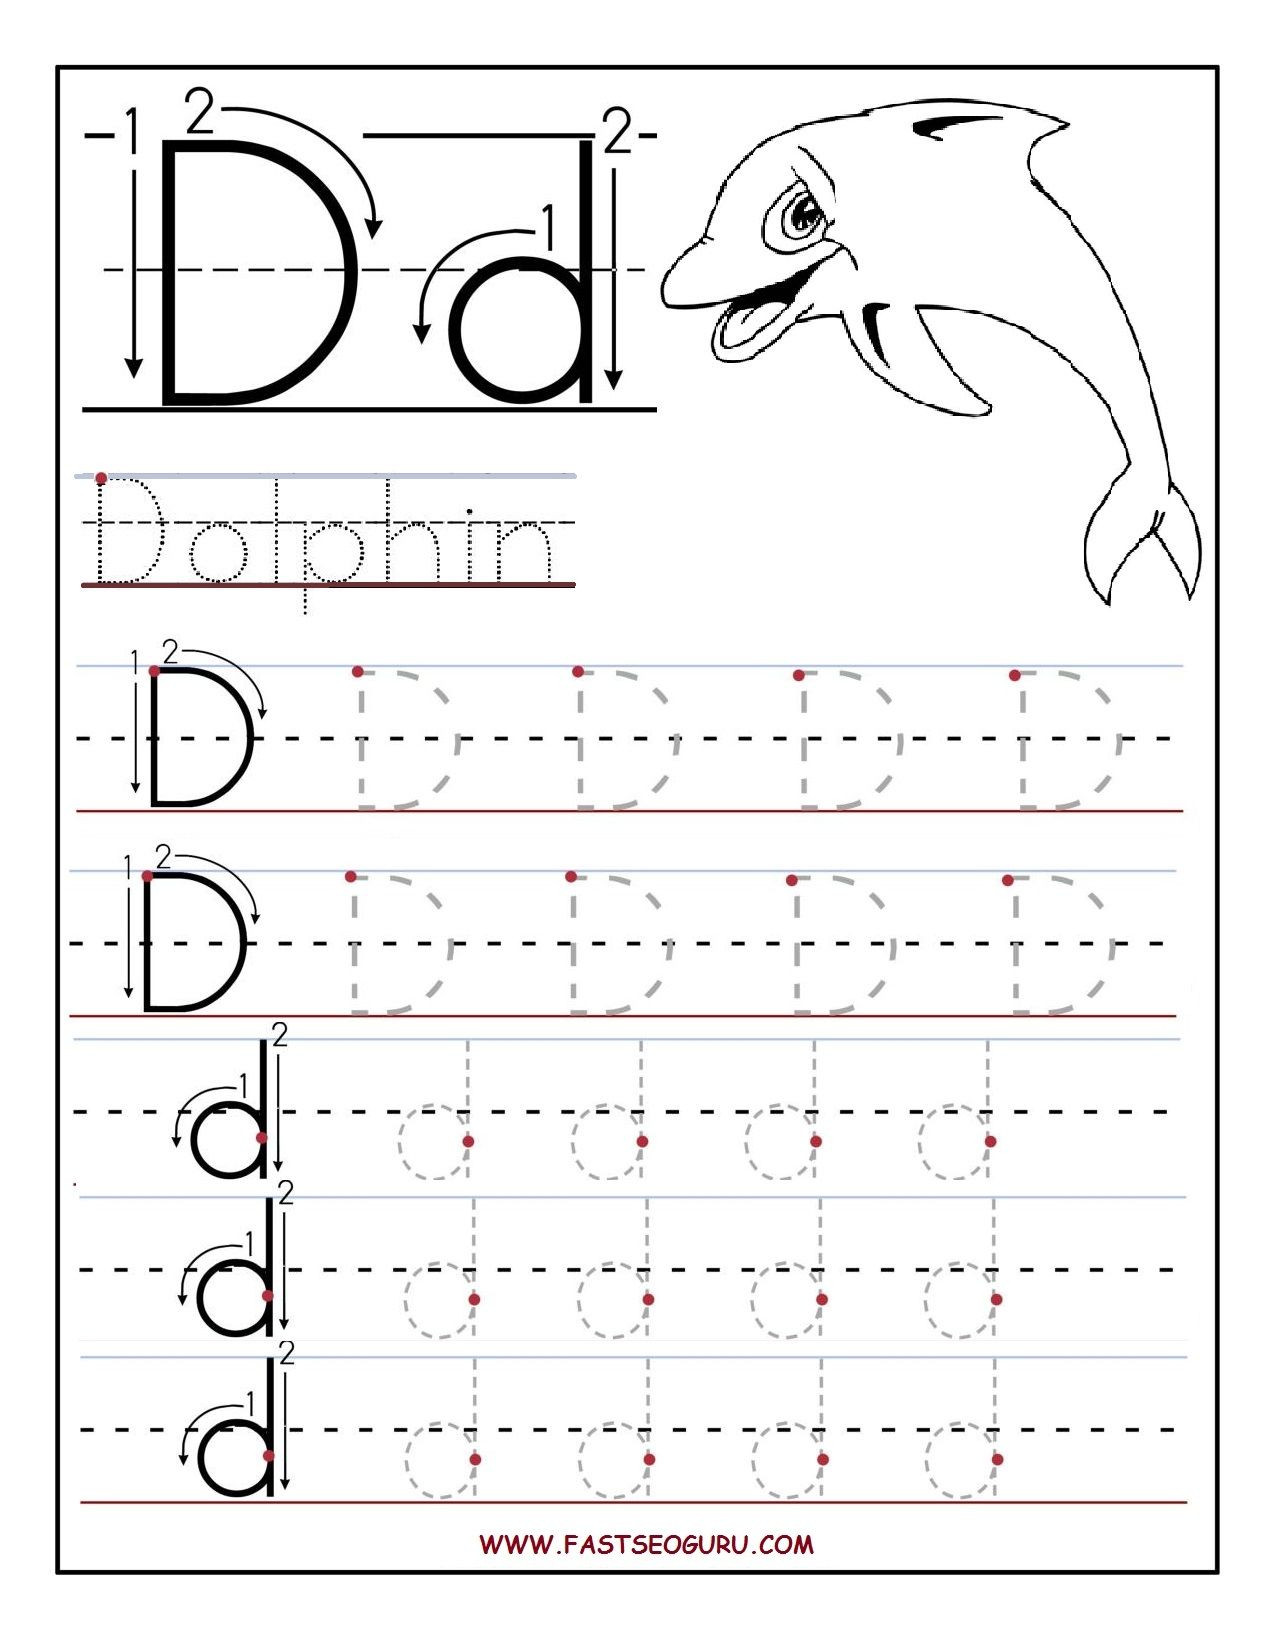 Letter D Worksheet Preschool Letter D Worksheets to You Letter D Worksheets Alphabet